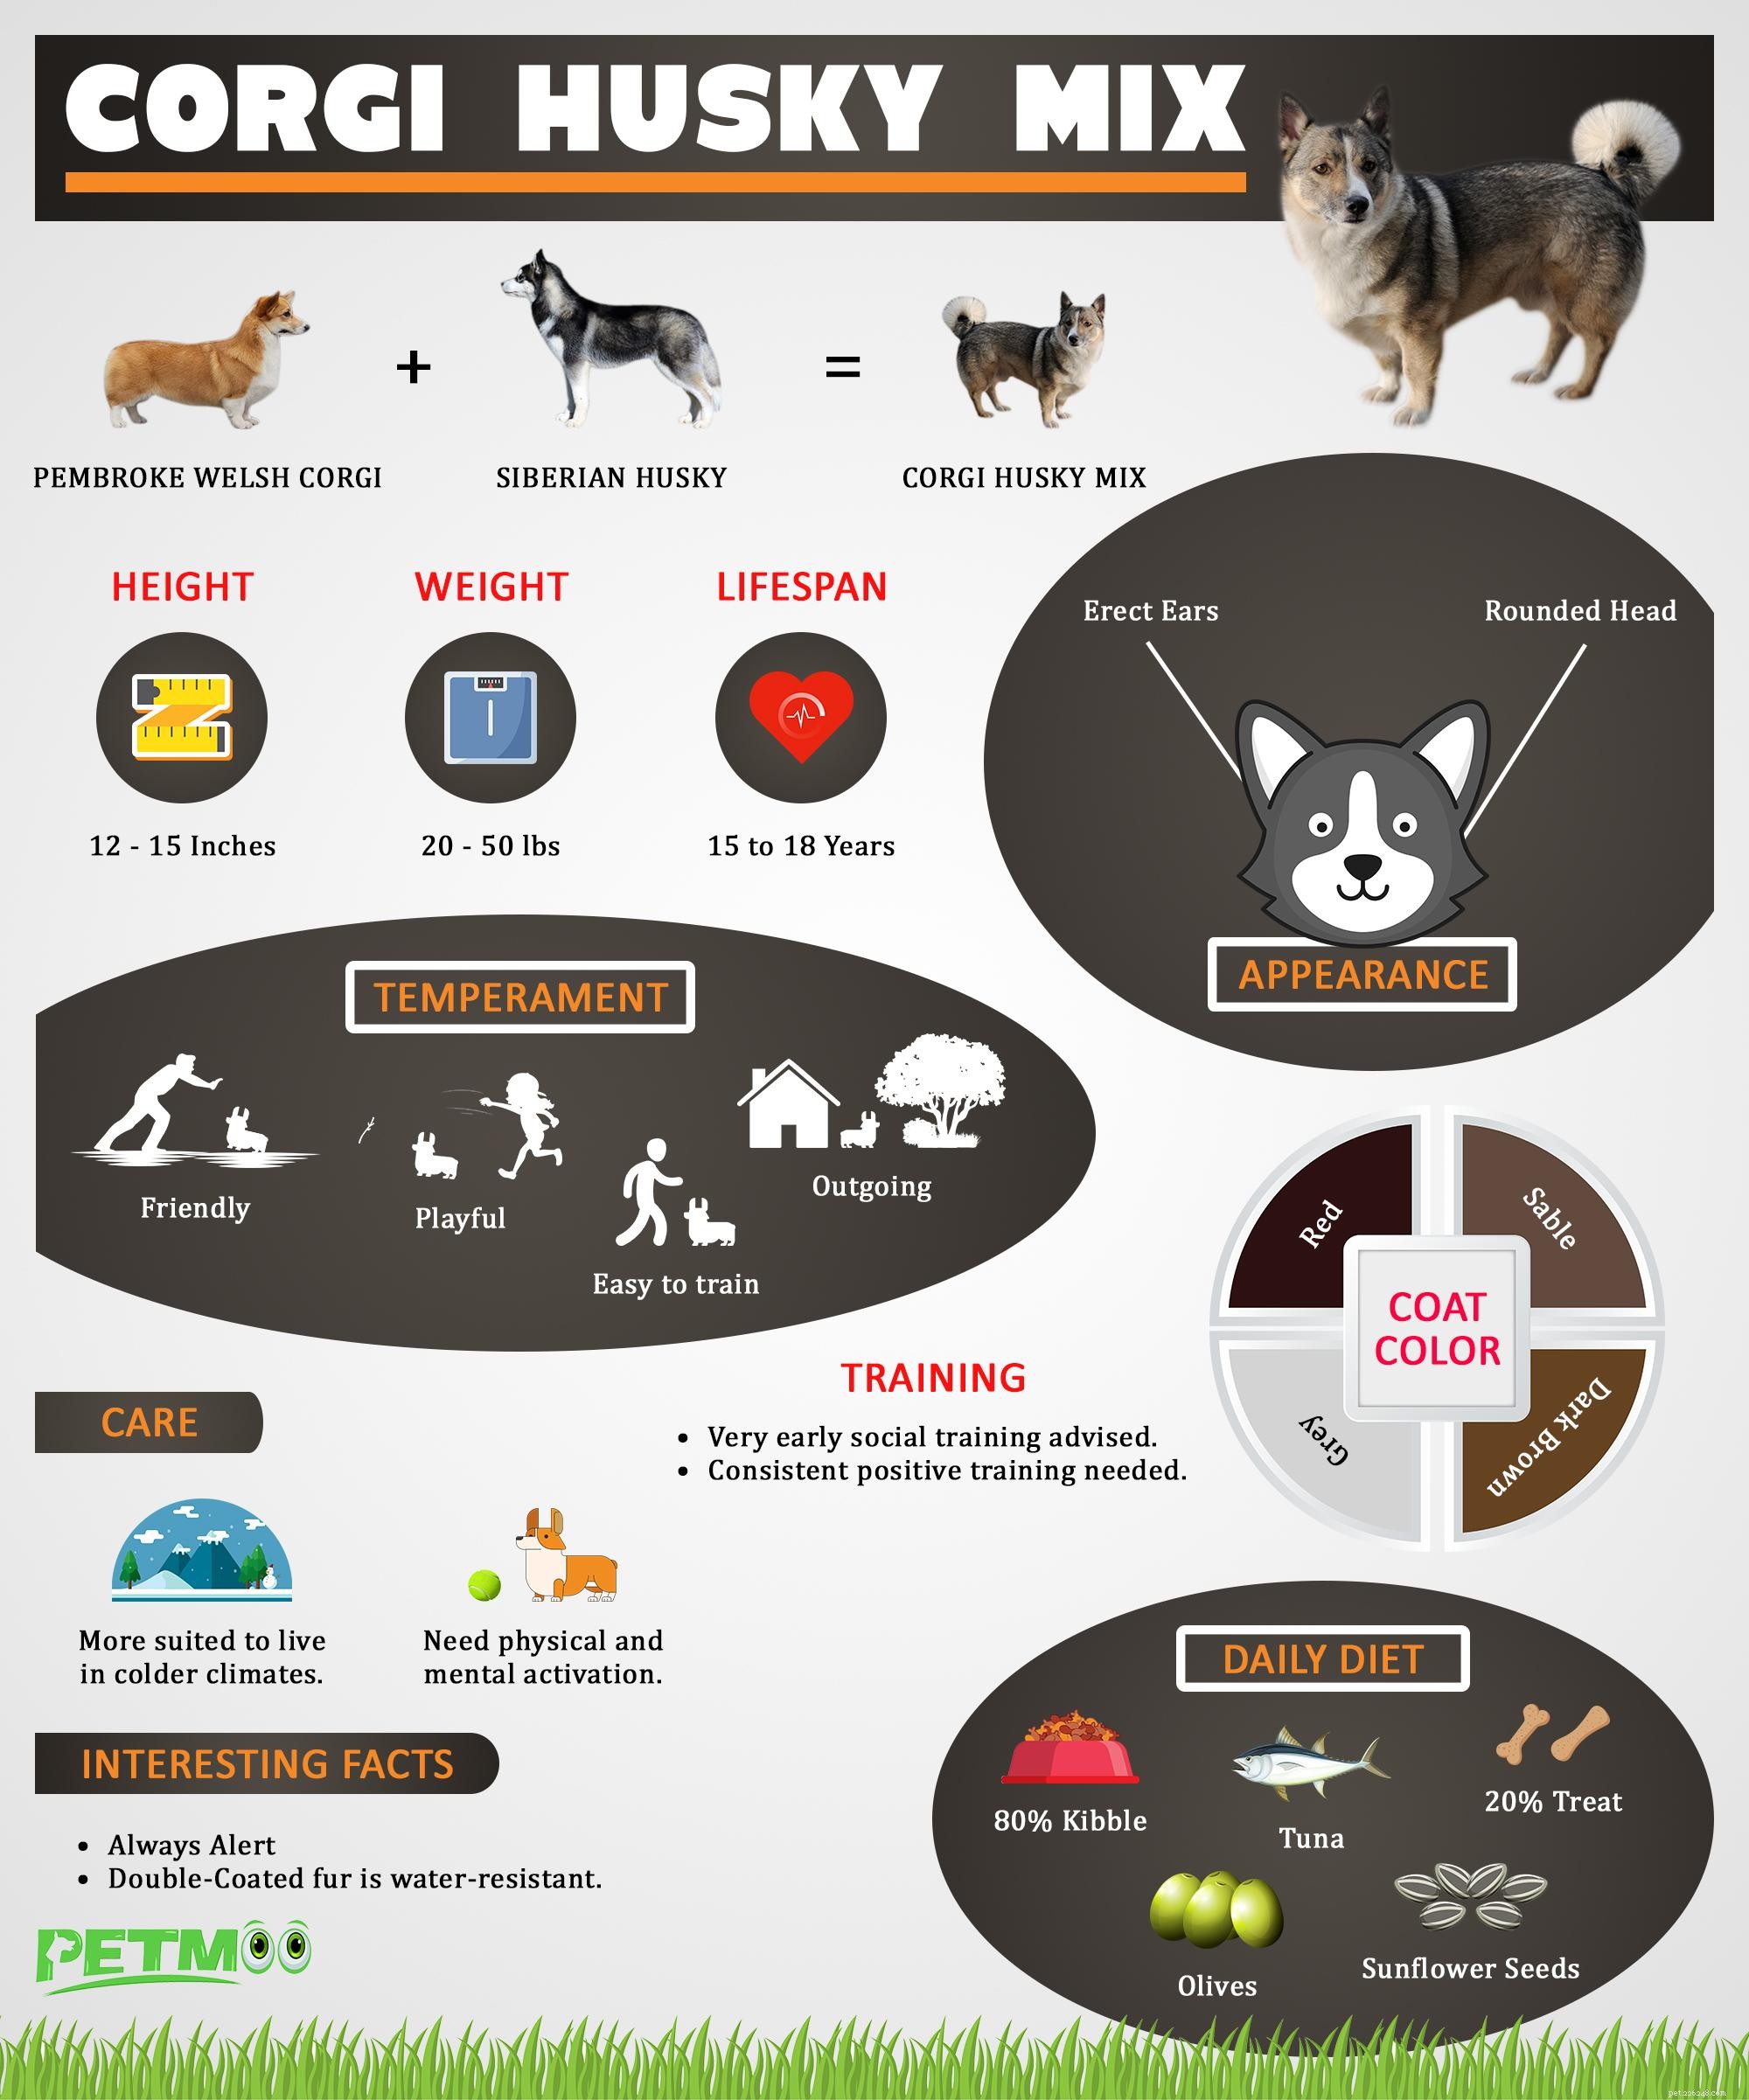 Corgi Husky Mix – Guida completa a Horgi e Siberian Husky